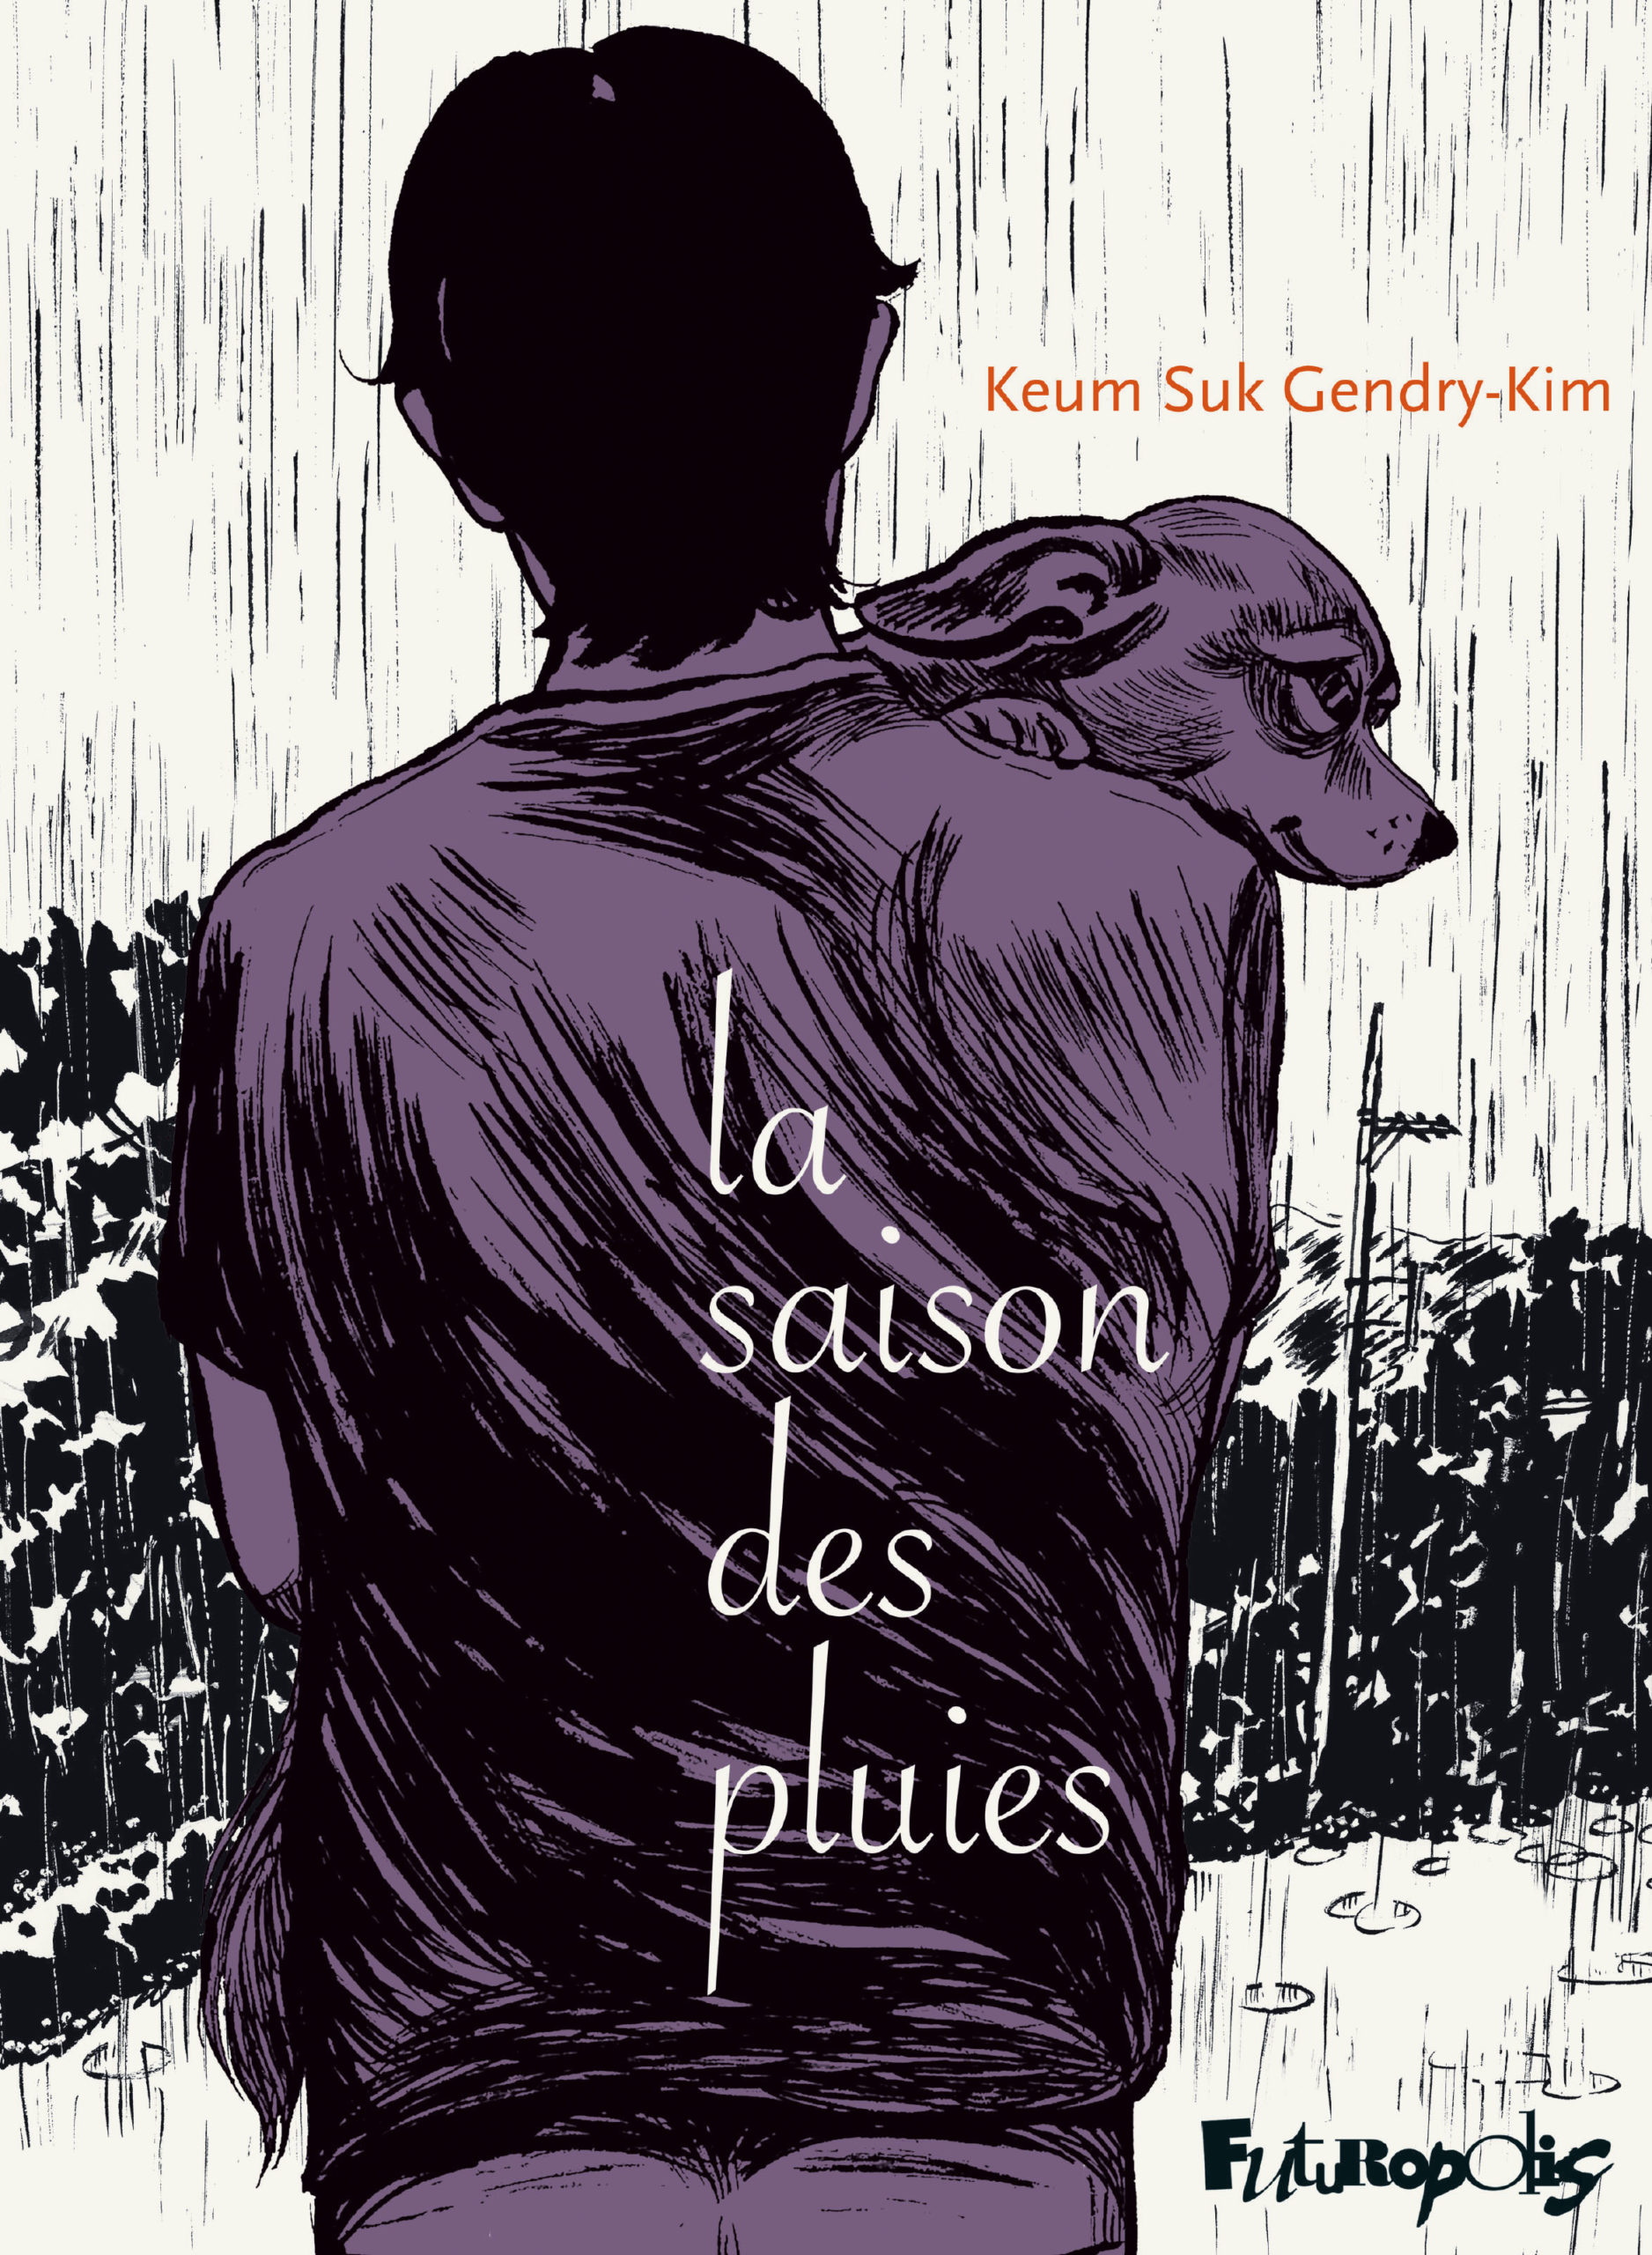 La saison des pluies, récit et dessin de Keum Suk Gendry-Kim.